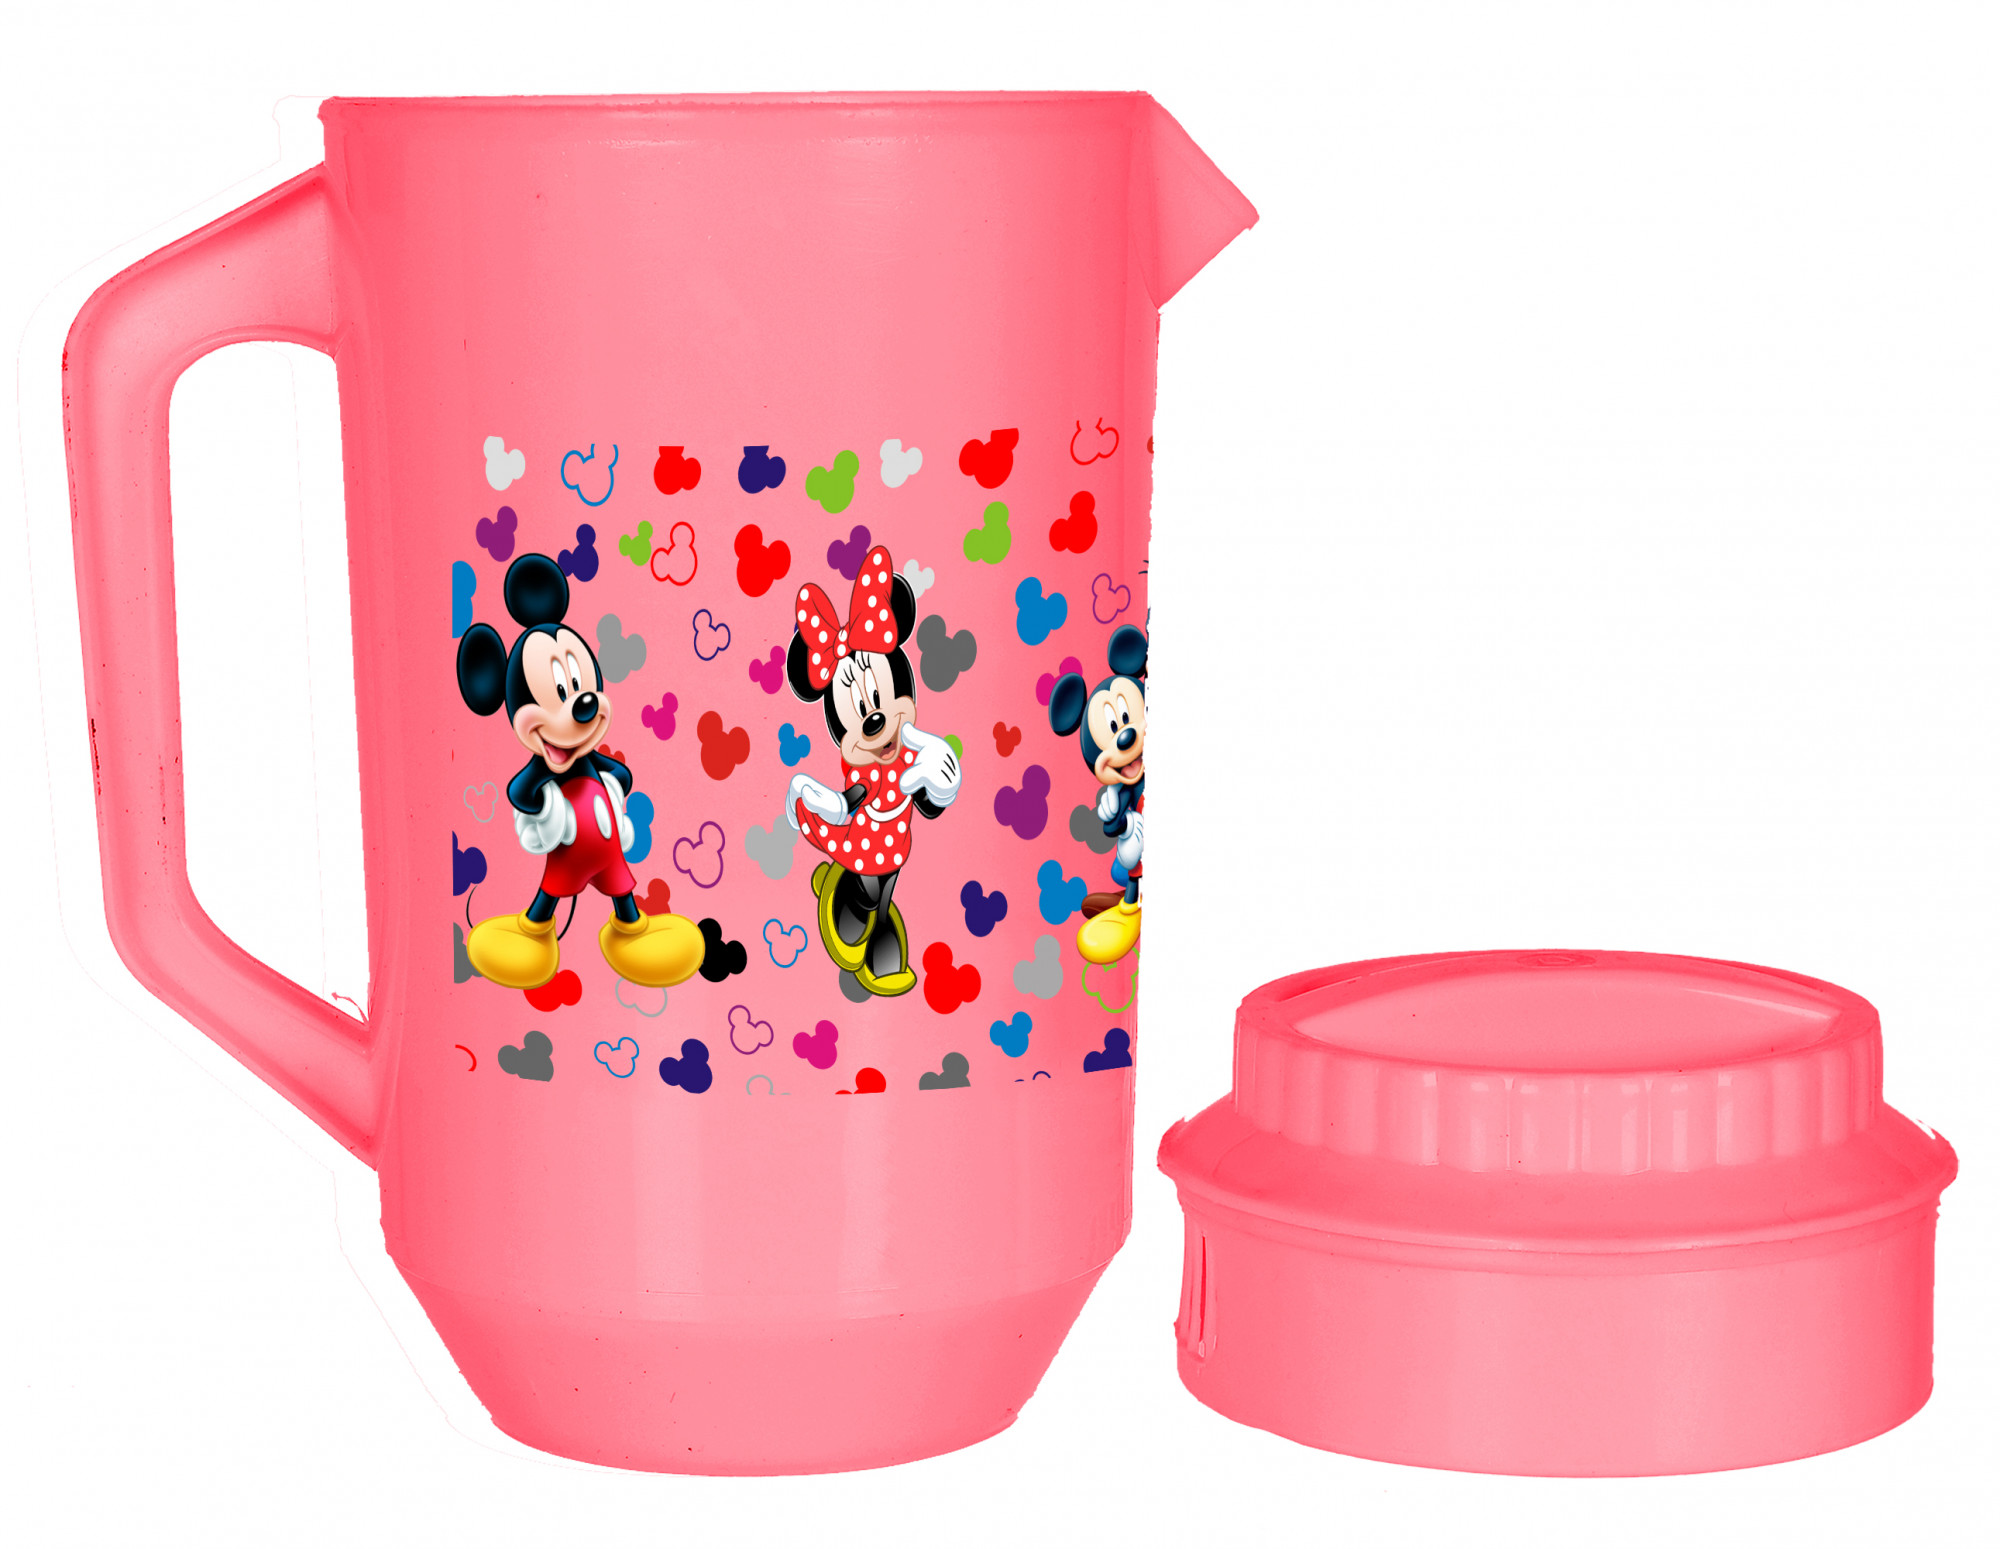 Kuber Industries Disney Team Mickey Print Unbreakable Multipurpose Plastic Water & Juice Jug With Lid,2 Ltr (Set Of 2, Pink & Cream)